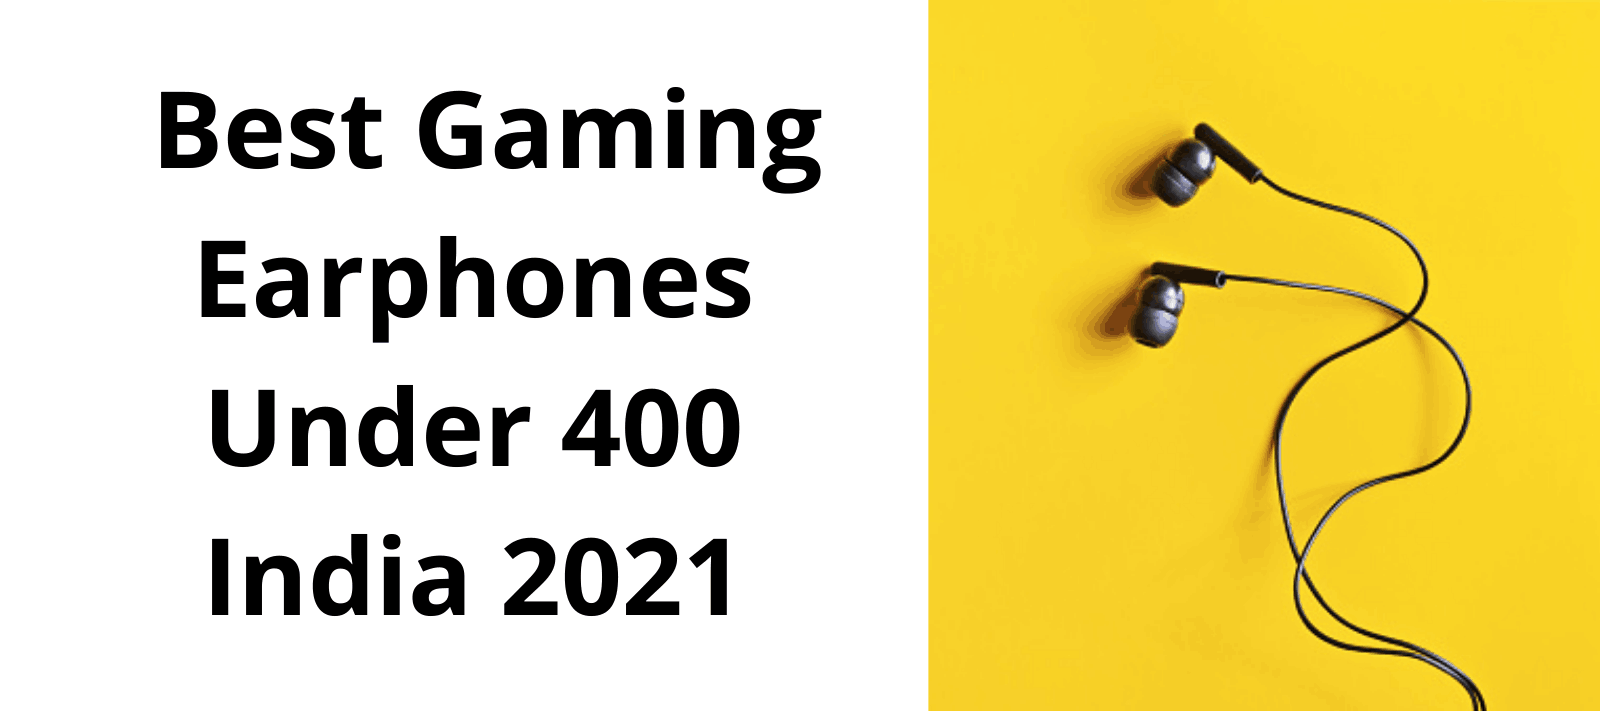 Best Gaming Earphones Under 400 India 2021